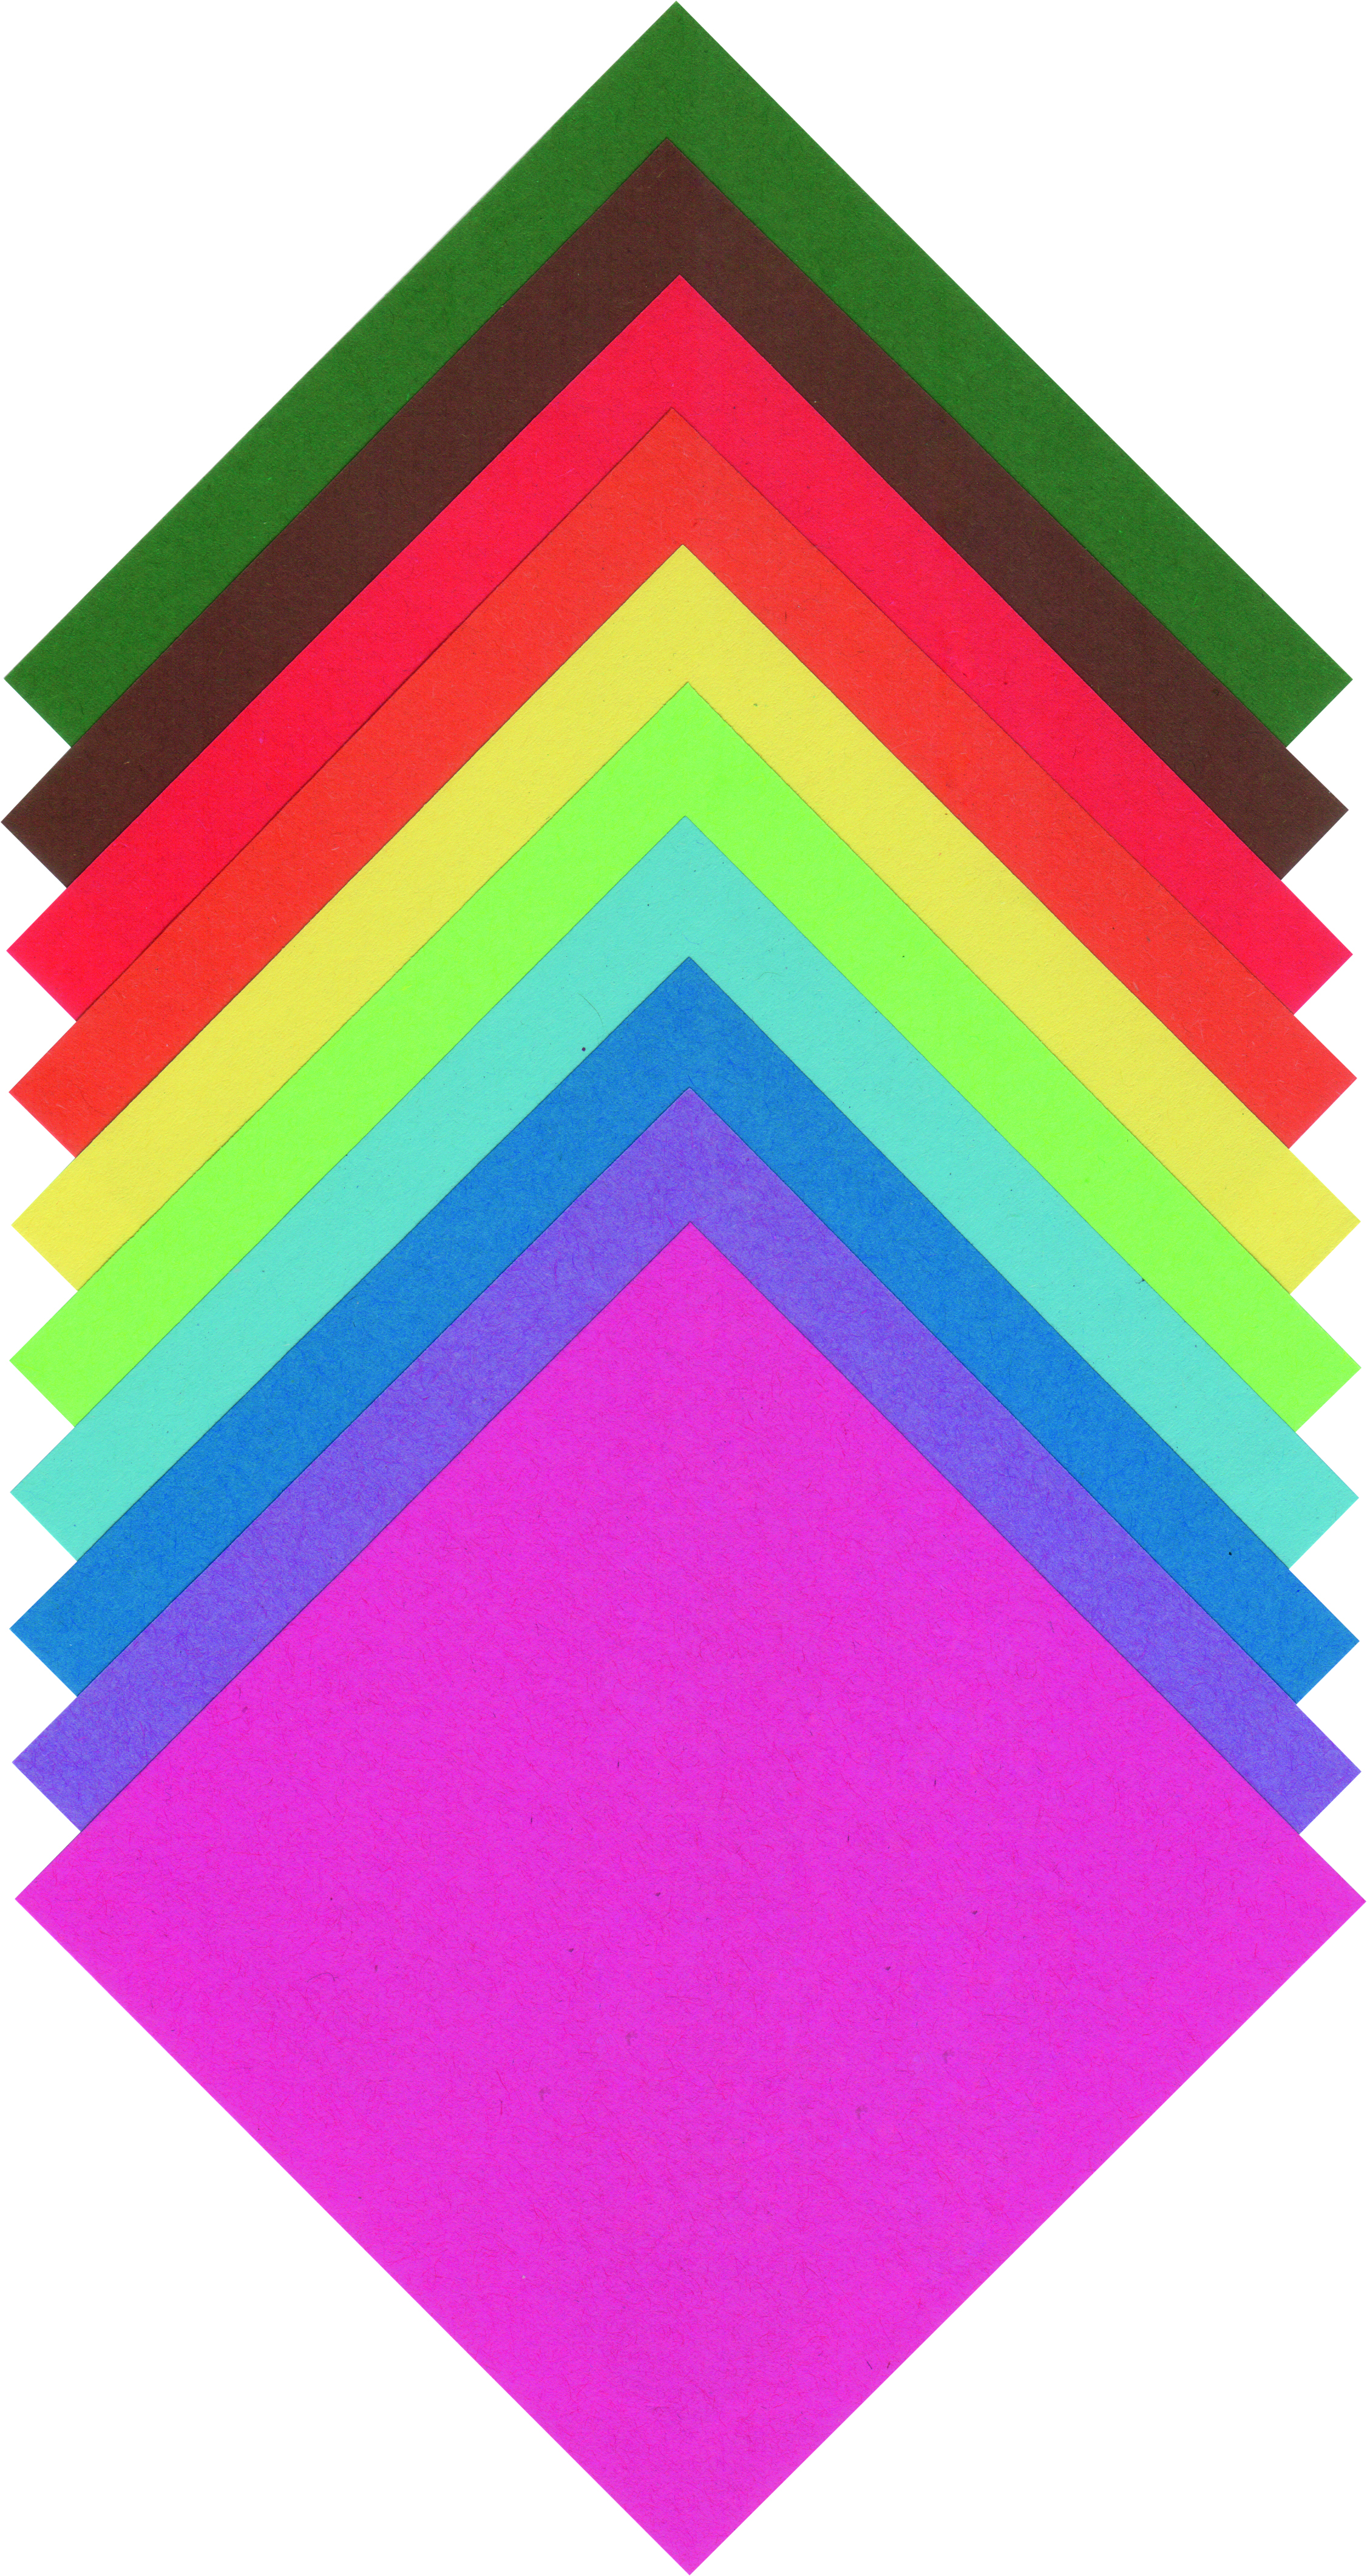 Origami papír 20x20 cm 100 archů v 10ti barvách